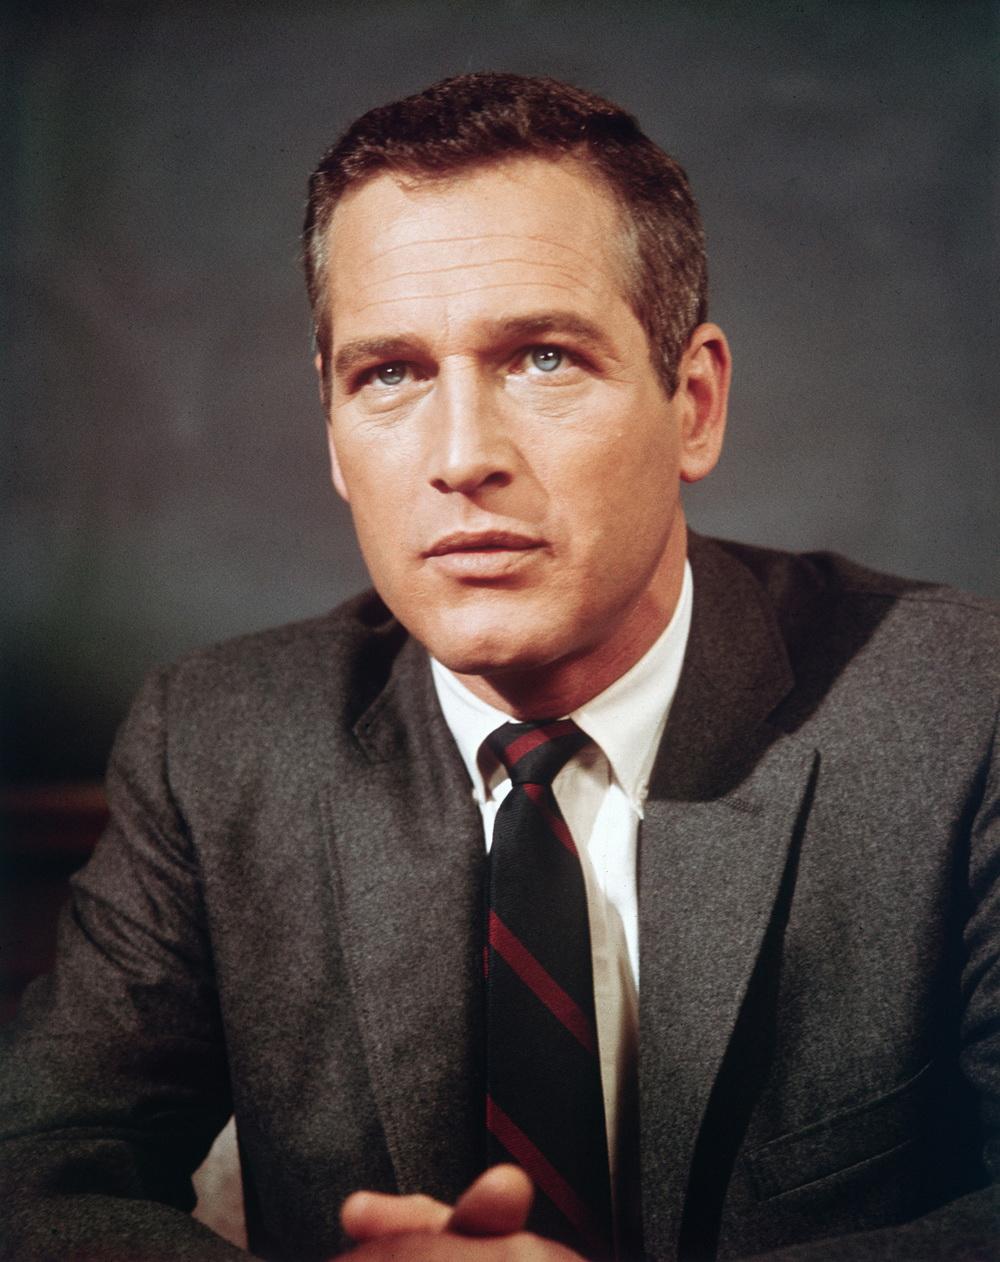 Photo №1094 Paul Newman.